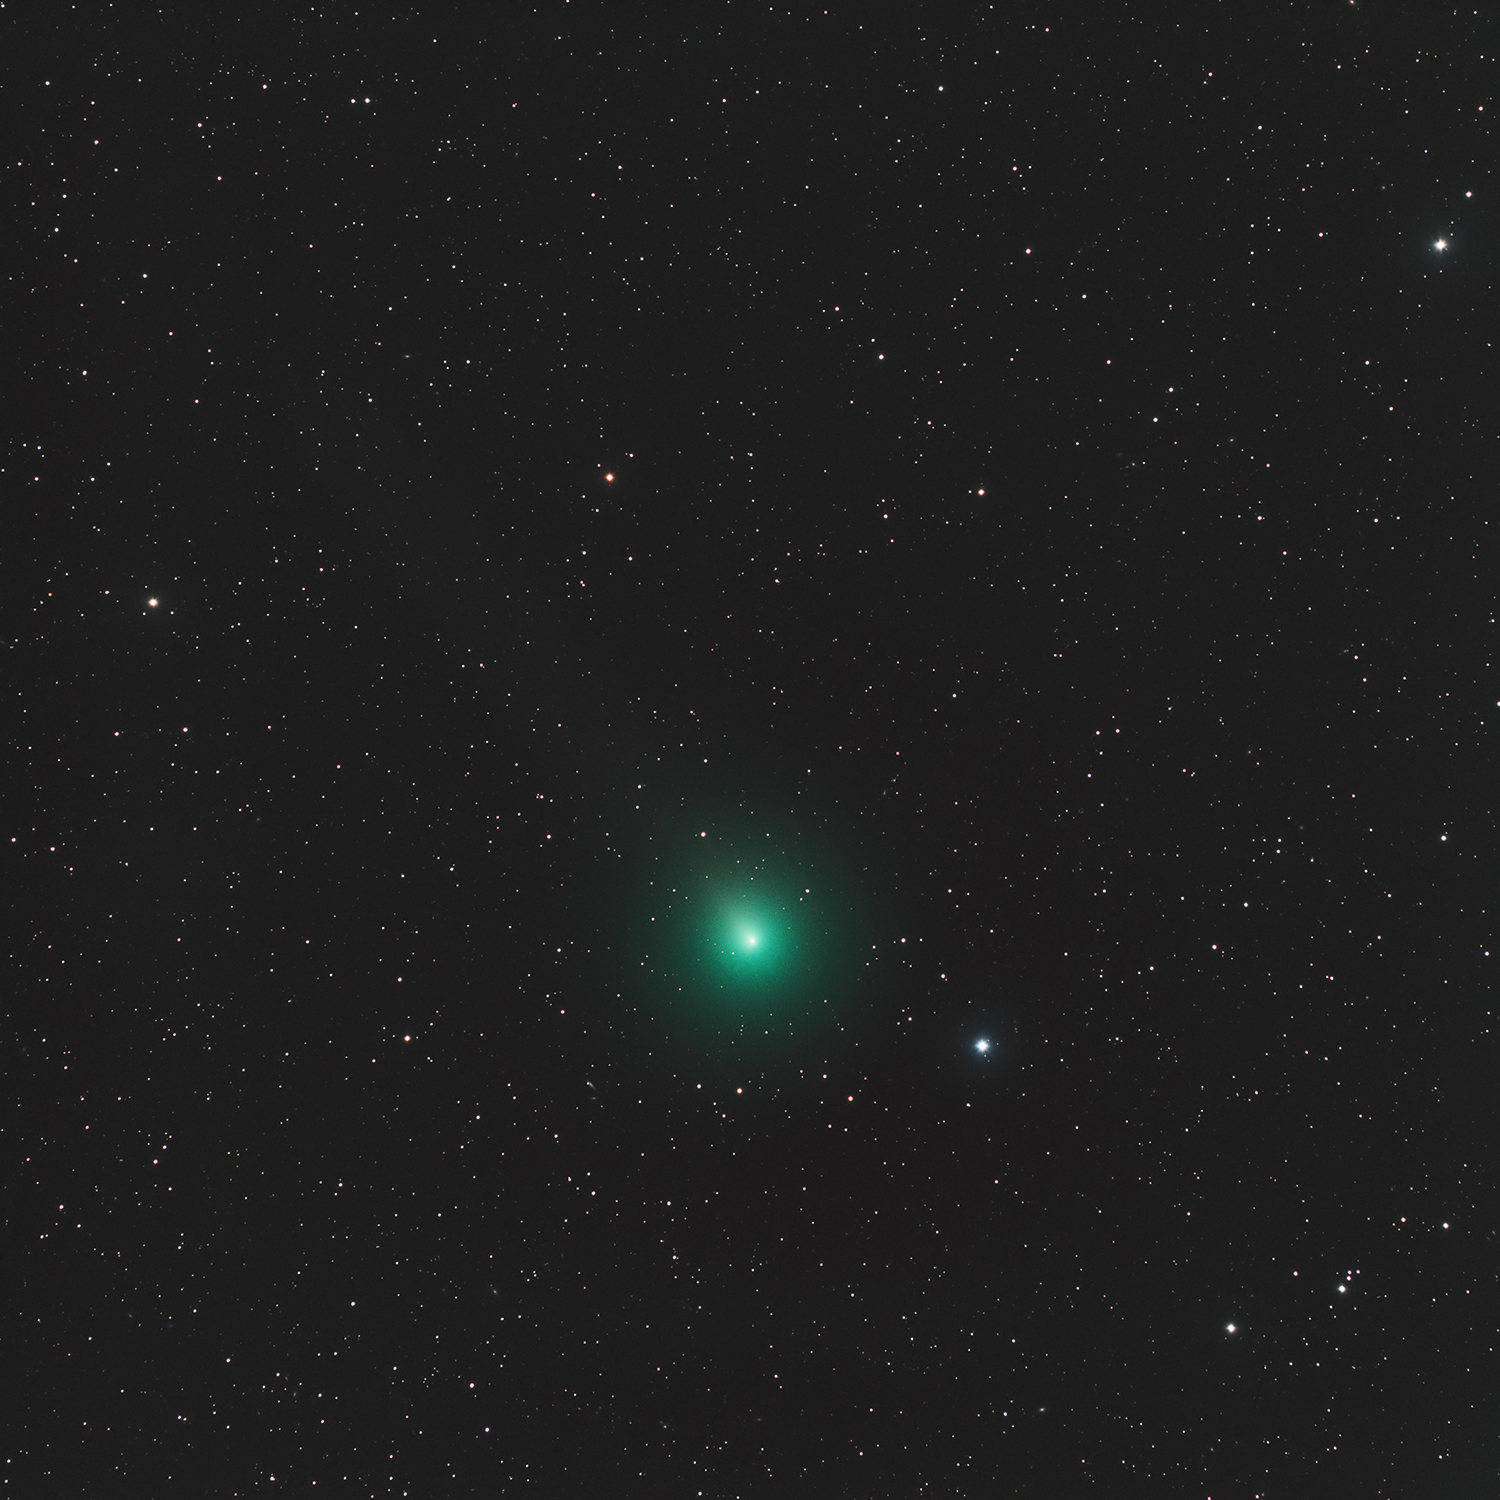 ดาวหาง 46P/Wirtanen ถ่ายเมื่อวันที่ 5 ธันวาคม พ.ศ.2561 (Photo: ตระกูลจิตร จิตตไสยะพันธ์)